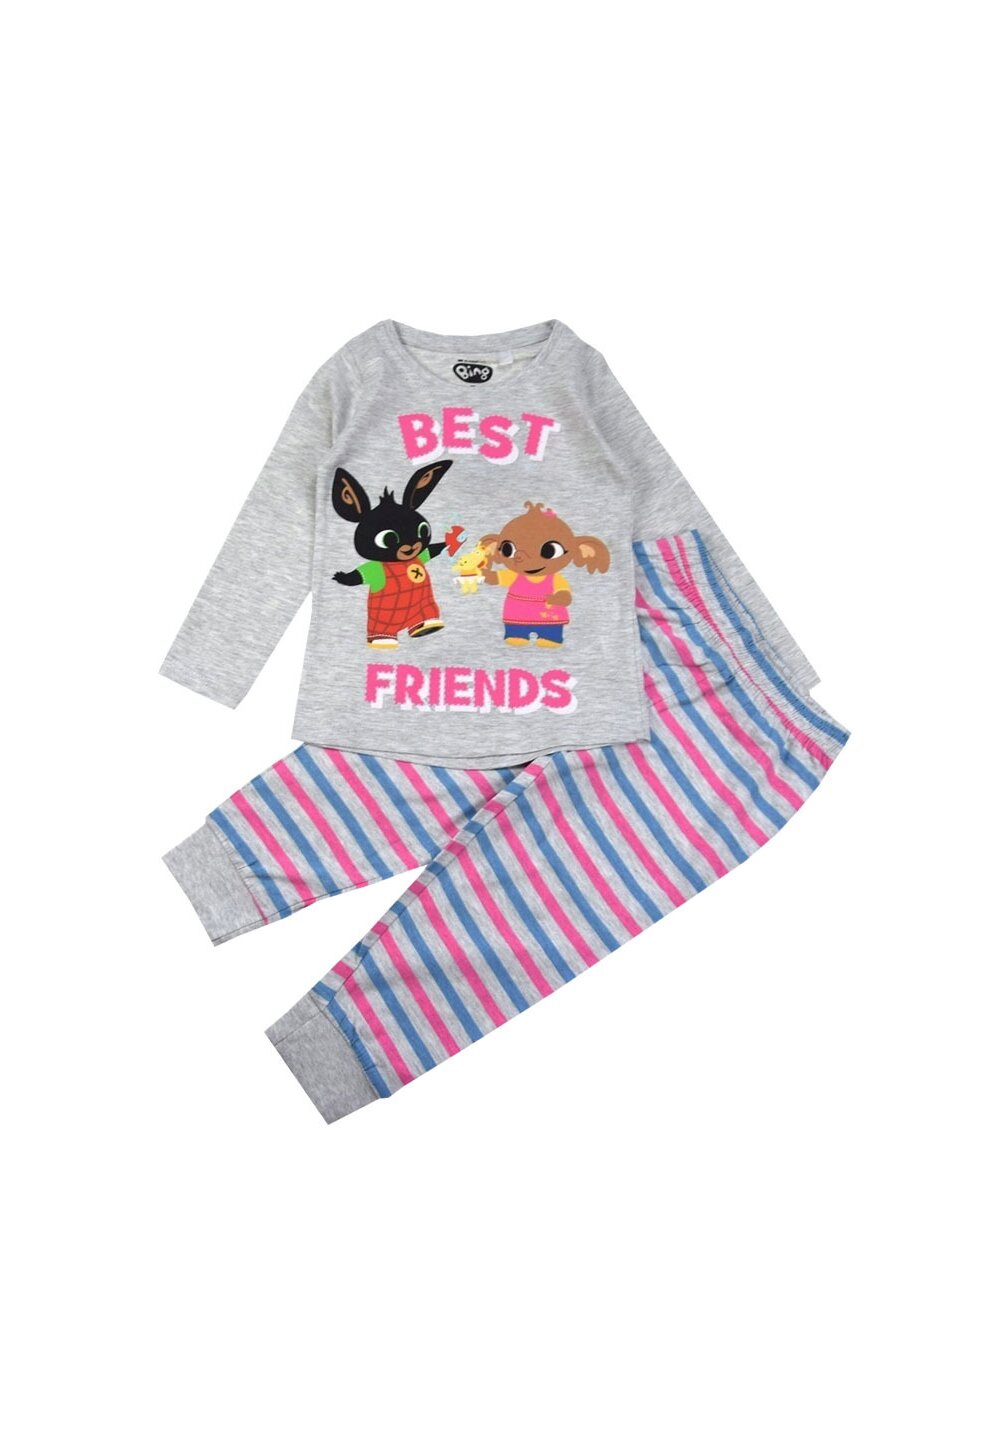 Pijama ML, bumbac, cu imprimeu, Best Friends, Bing, gri DISNEY